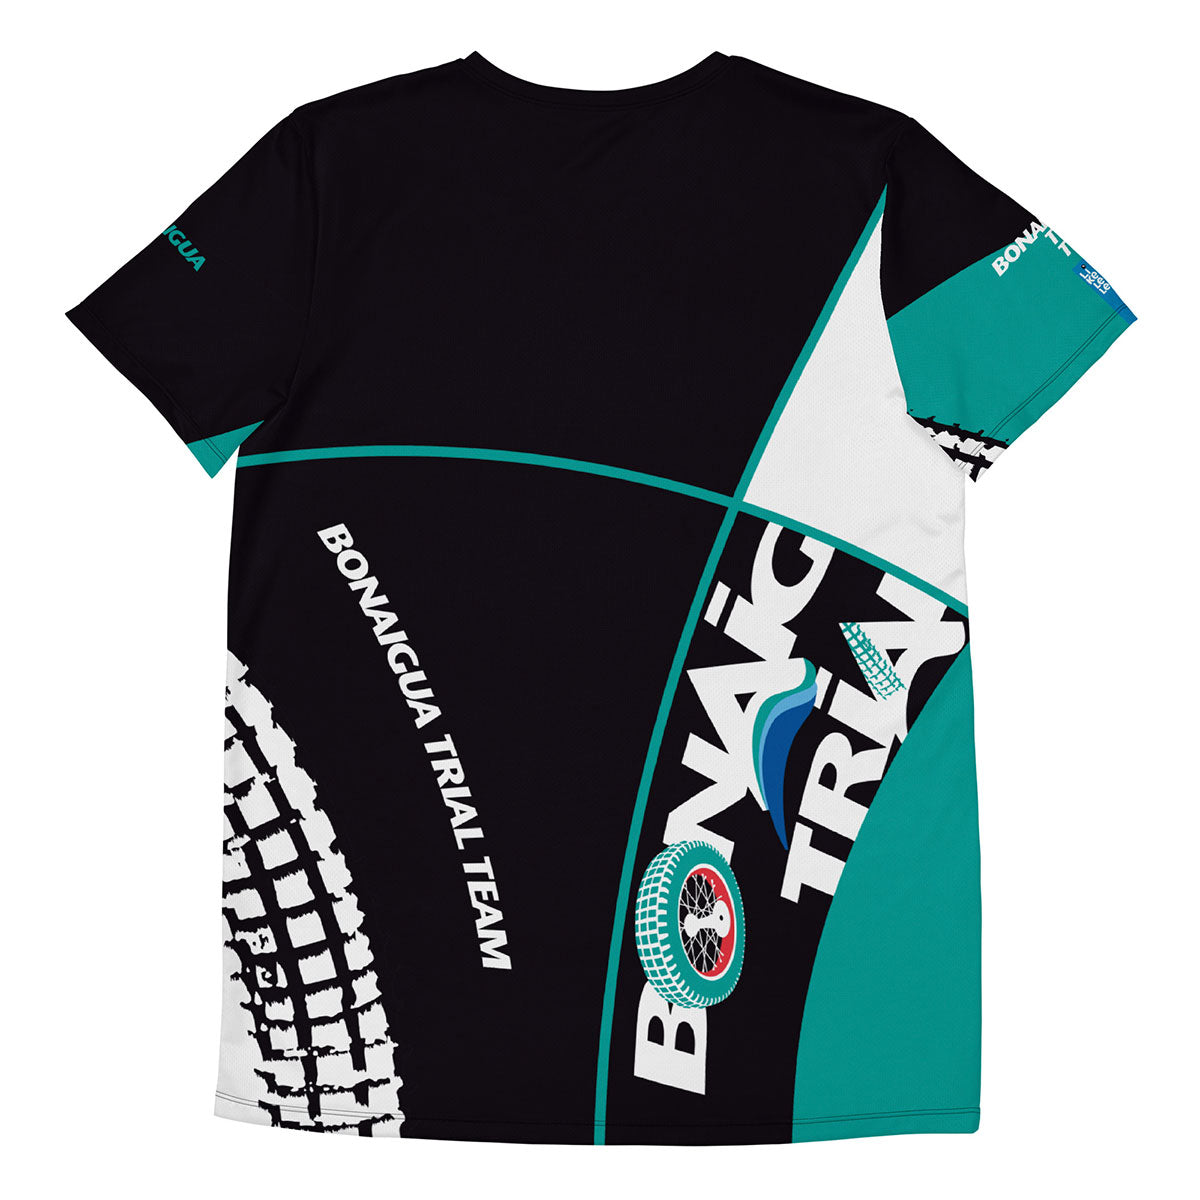 BONAIGUA TRIAL · Camiseta deportiva m/corta·Hombre · Premium·Full Print-247x1ipi